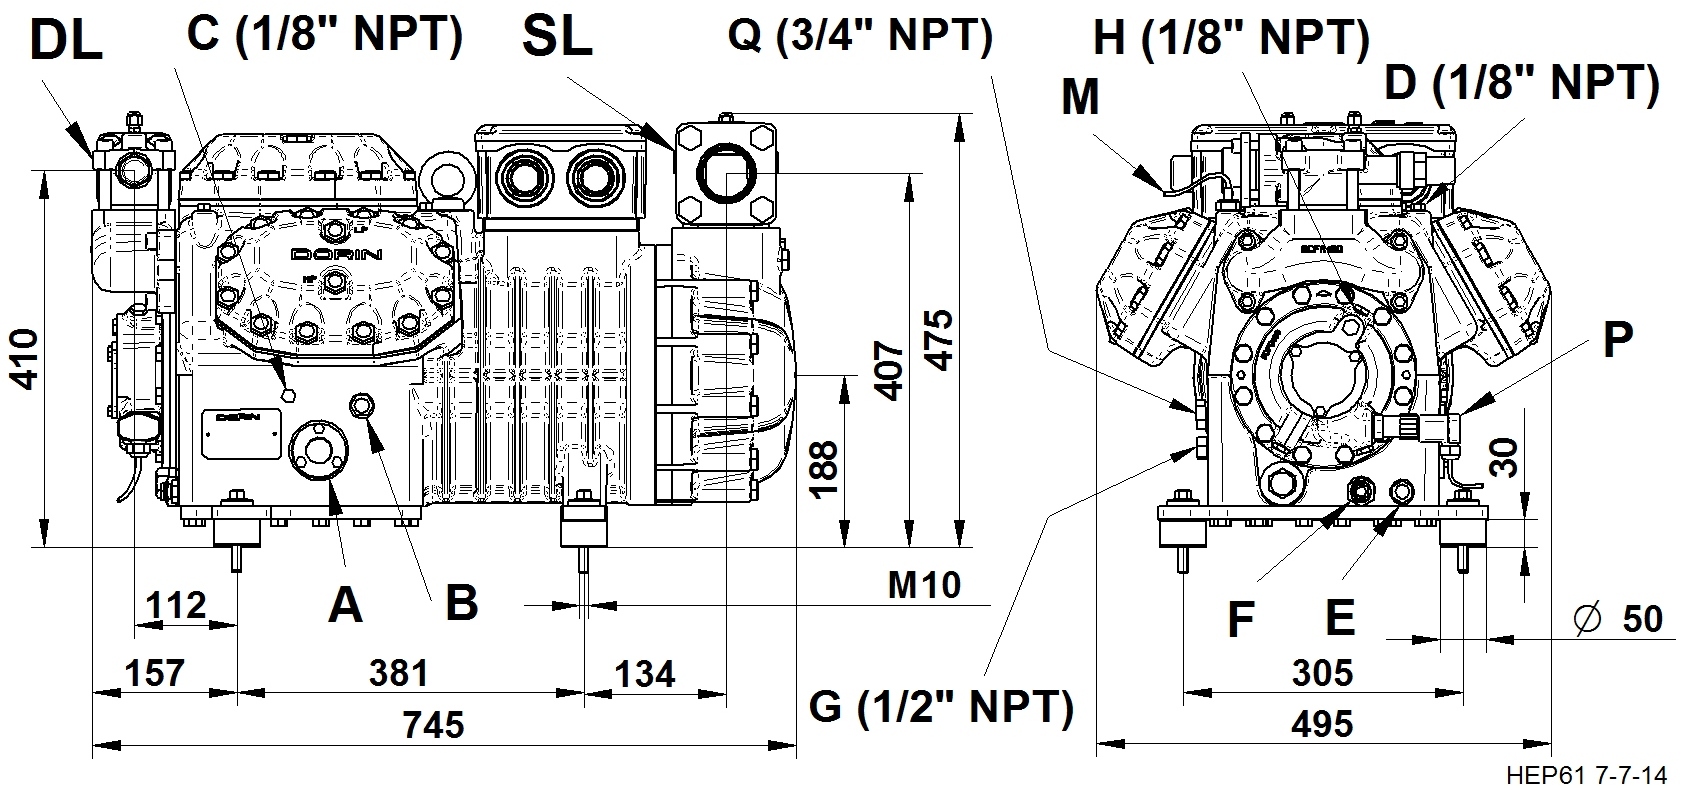 H3000EP - Compressori Semiermetici per R134a Serie HEP | DORIN